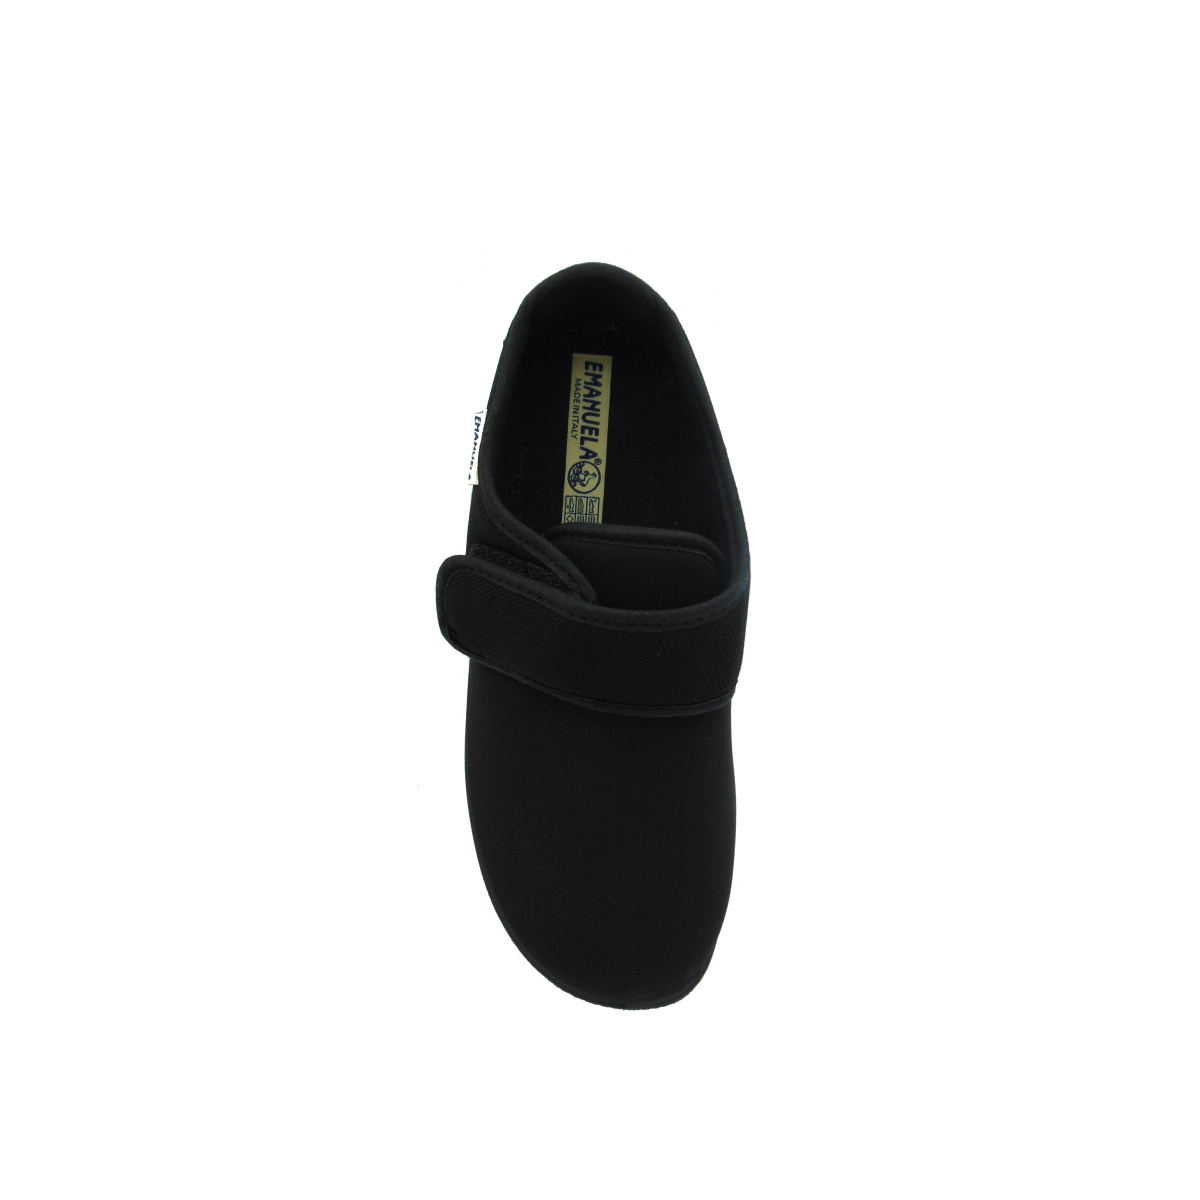 Pantofola Uomo elasticizzata con strappo Emanuela 986 nero (versione estiva)